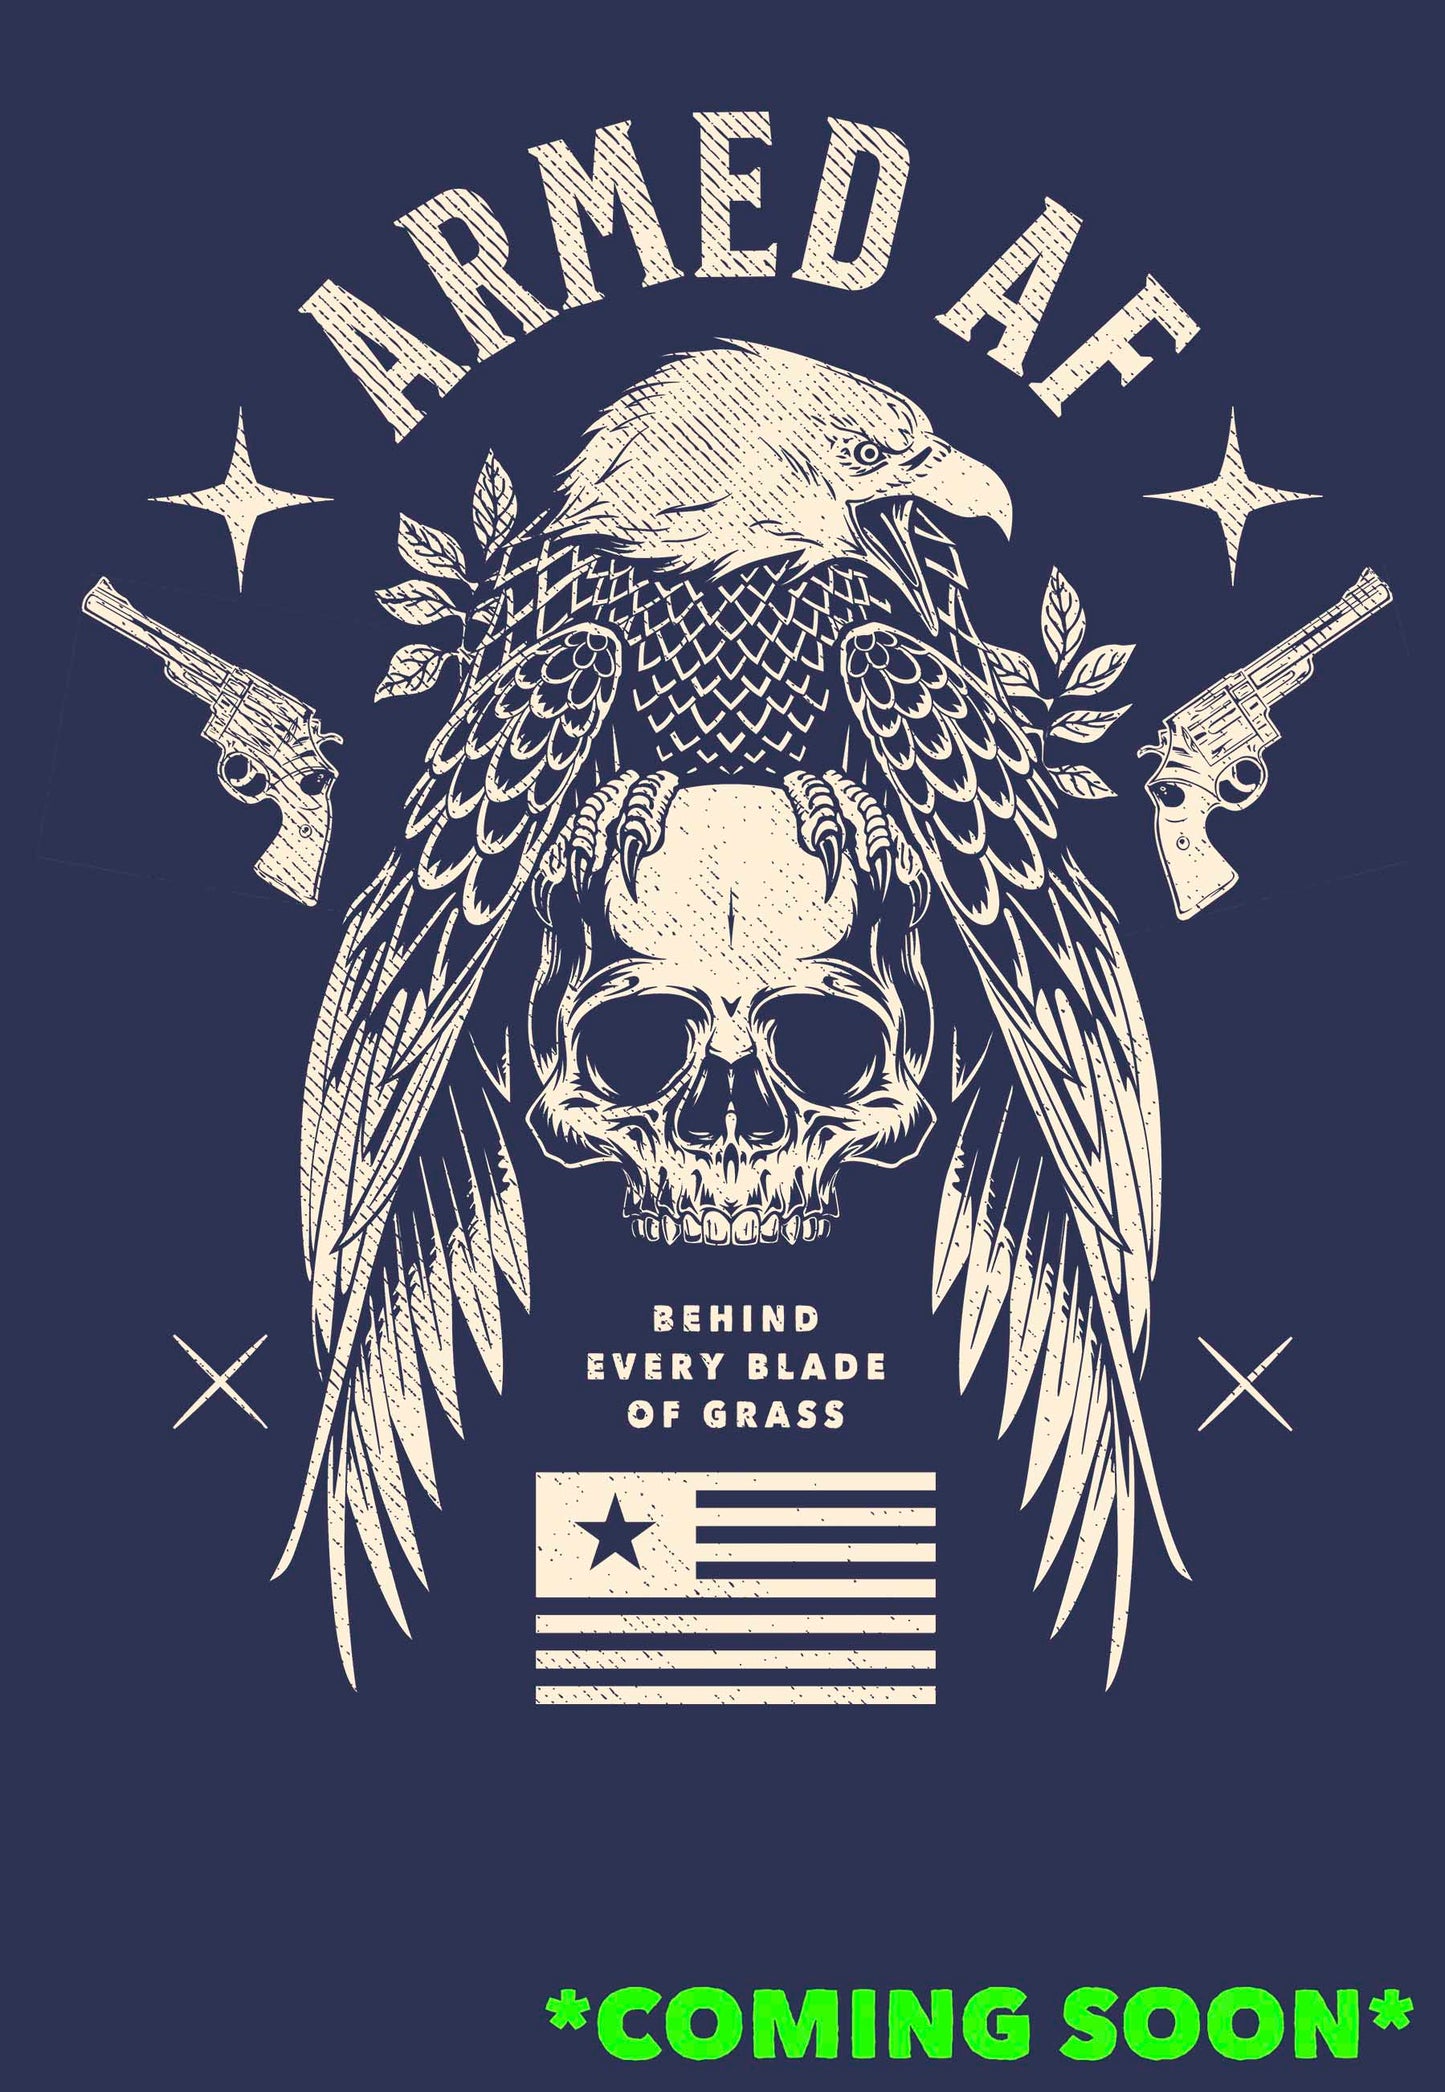 Armed AF® t-shirt design coming soon marker